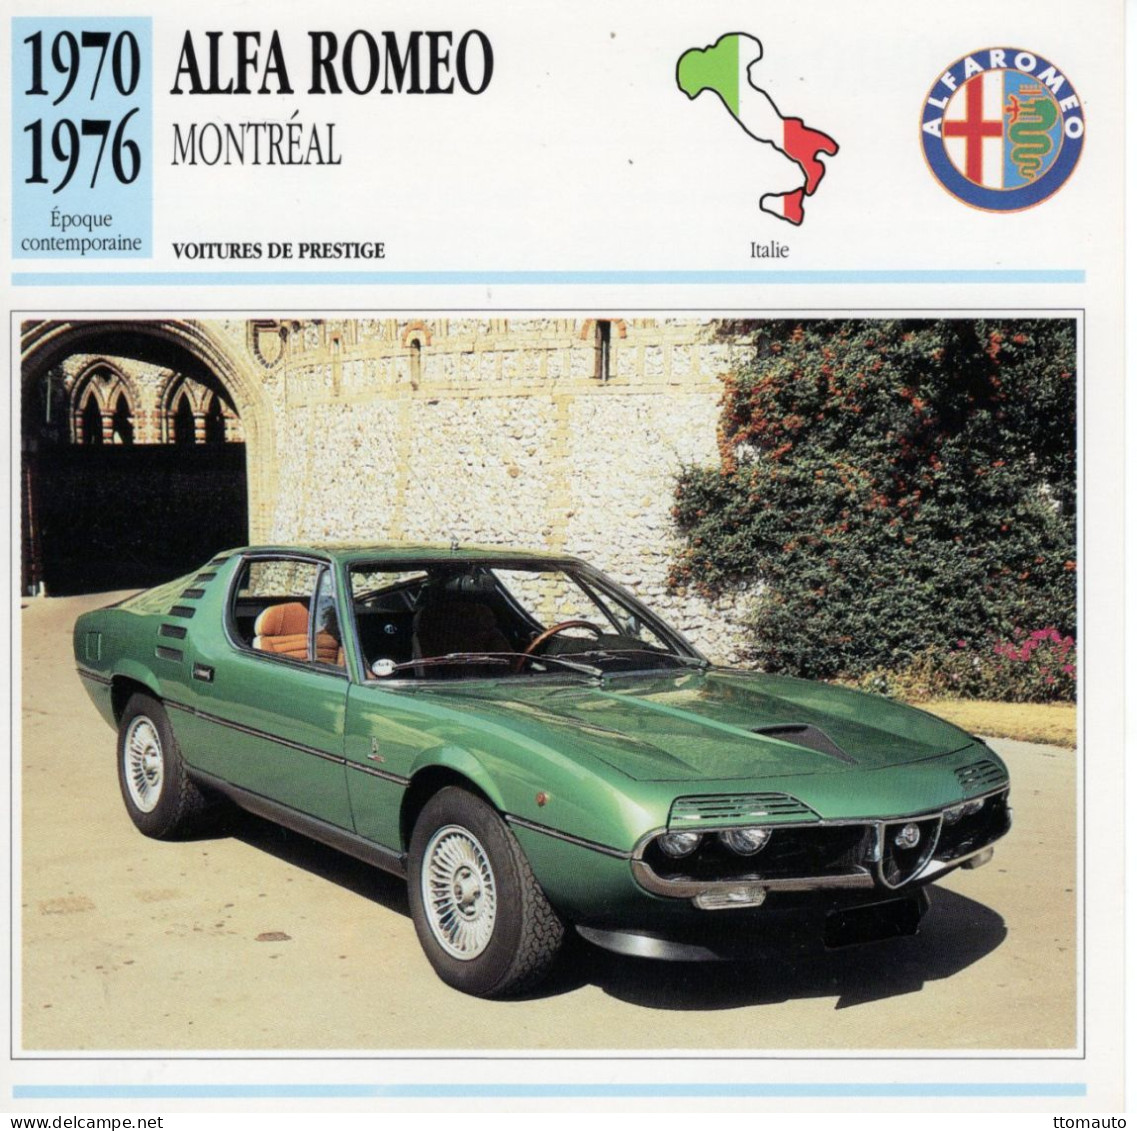 Alfa Romeo Montréal  -  1972  - Voiture De Prestige -  Fiche Technique Automobile (I) - Coches